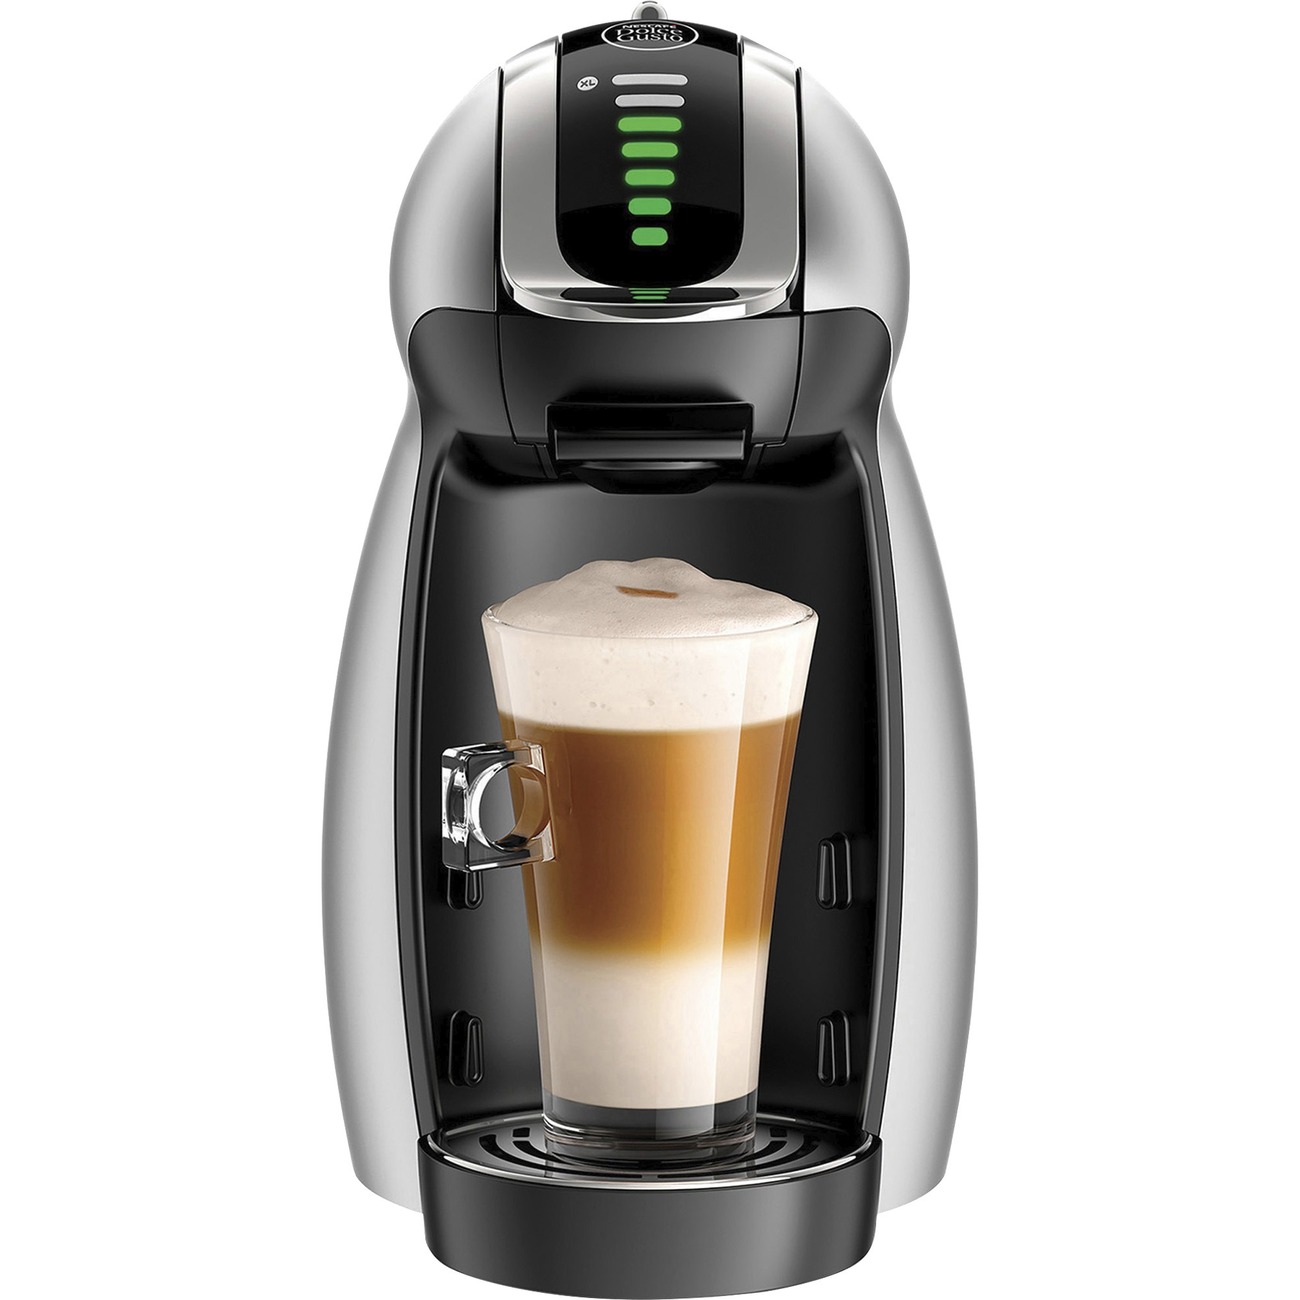 NES65198 - Nescafe Dolce Gusto Genio Coffee Machine - Programmable15 barSingle-serve - Dolce Gusto Pod/Capsule Brand - Black - Office Supply Hut